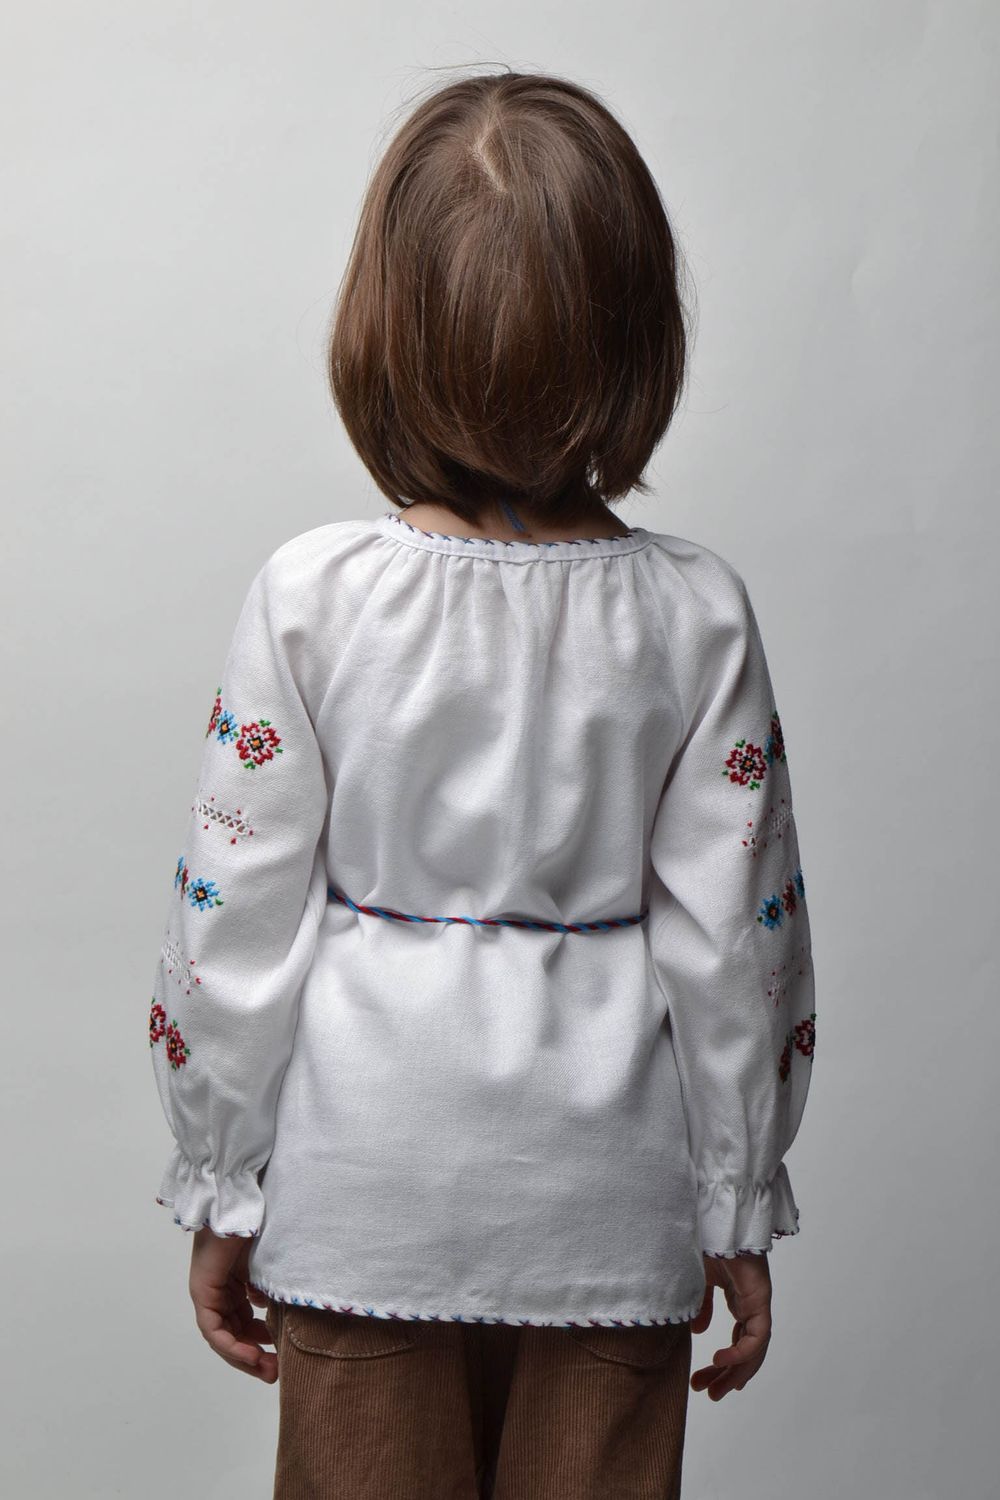 Camisa bordada de manga larga con cinturón para niña de 5-7 años de edad foto 4